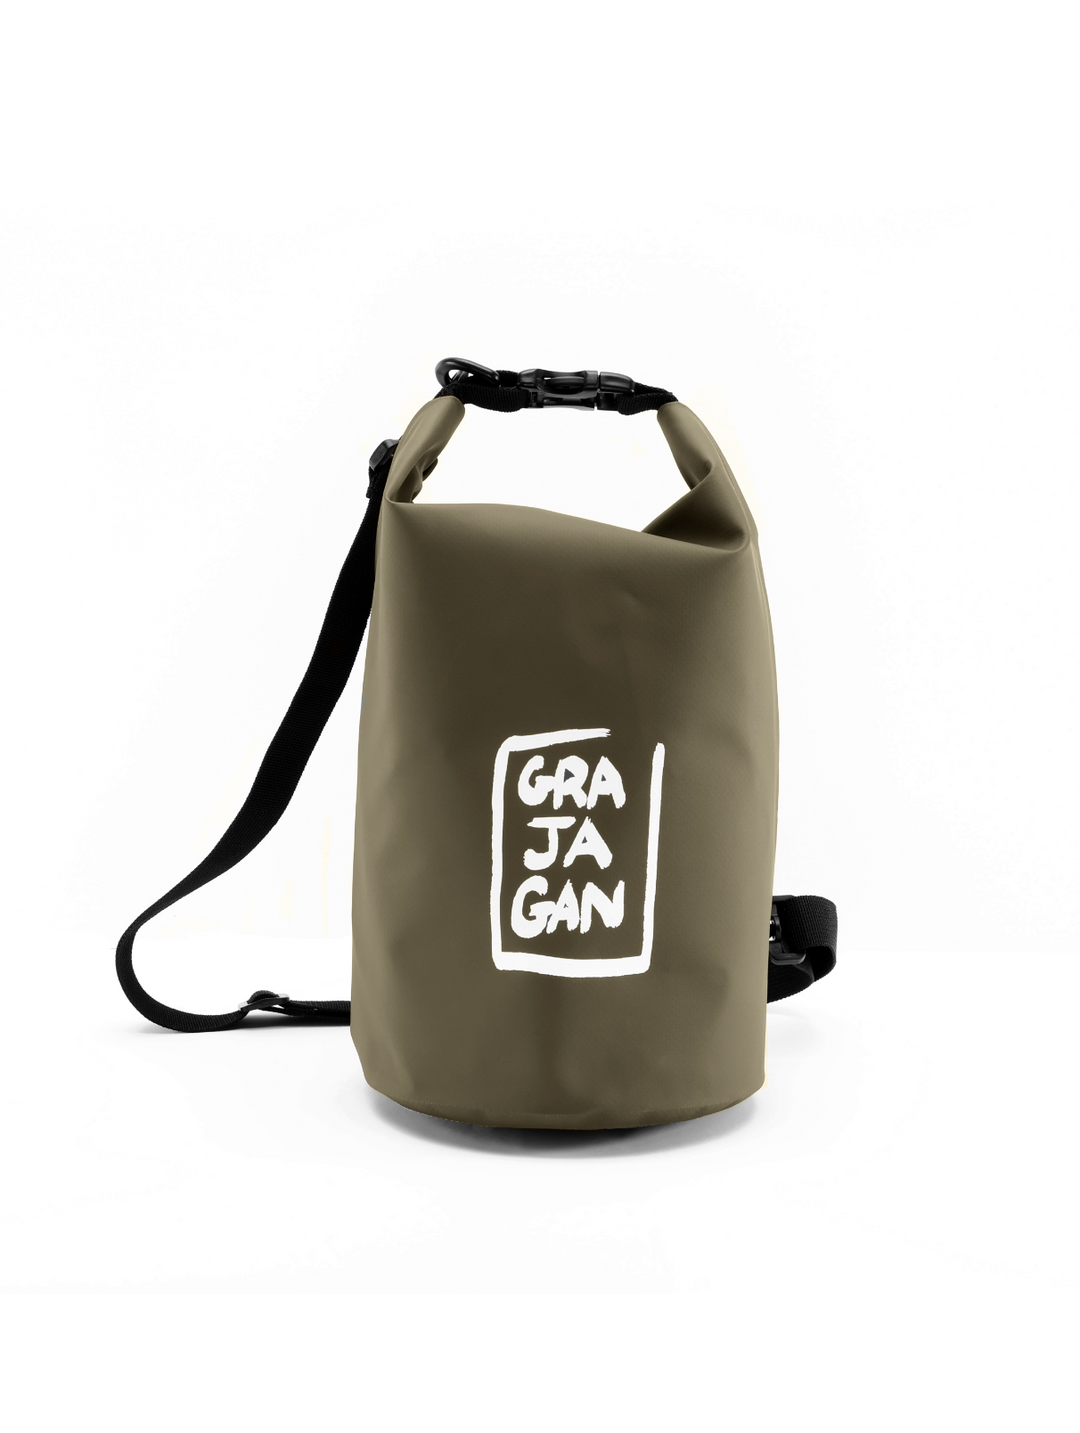 DRY BAG - 5 litres - Grajagan